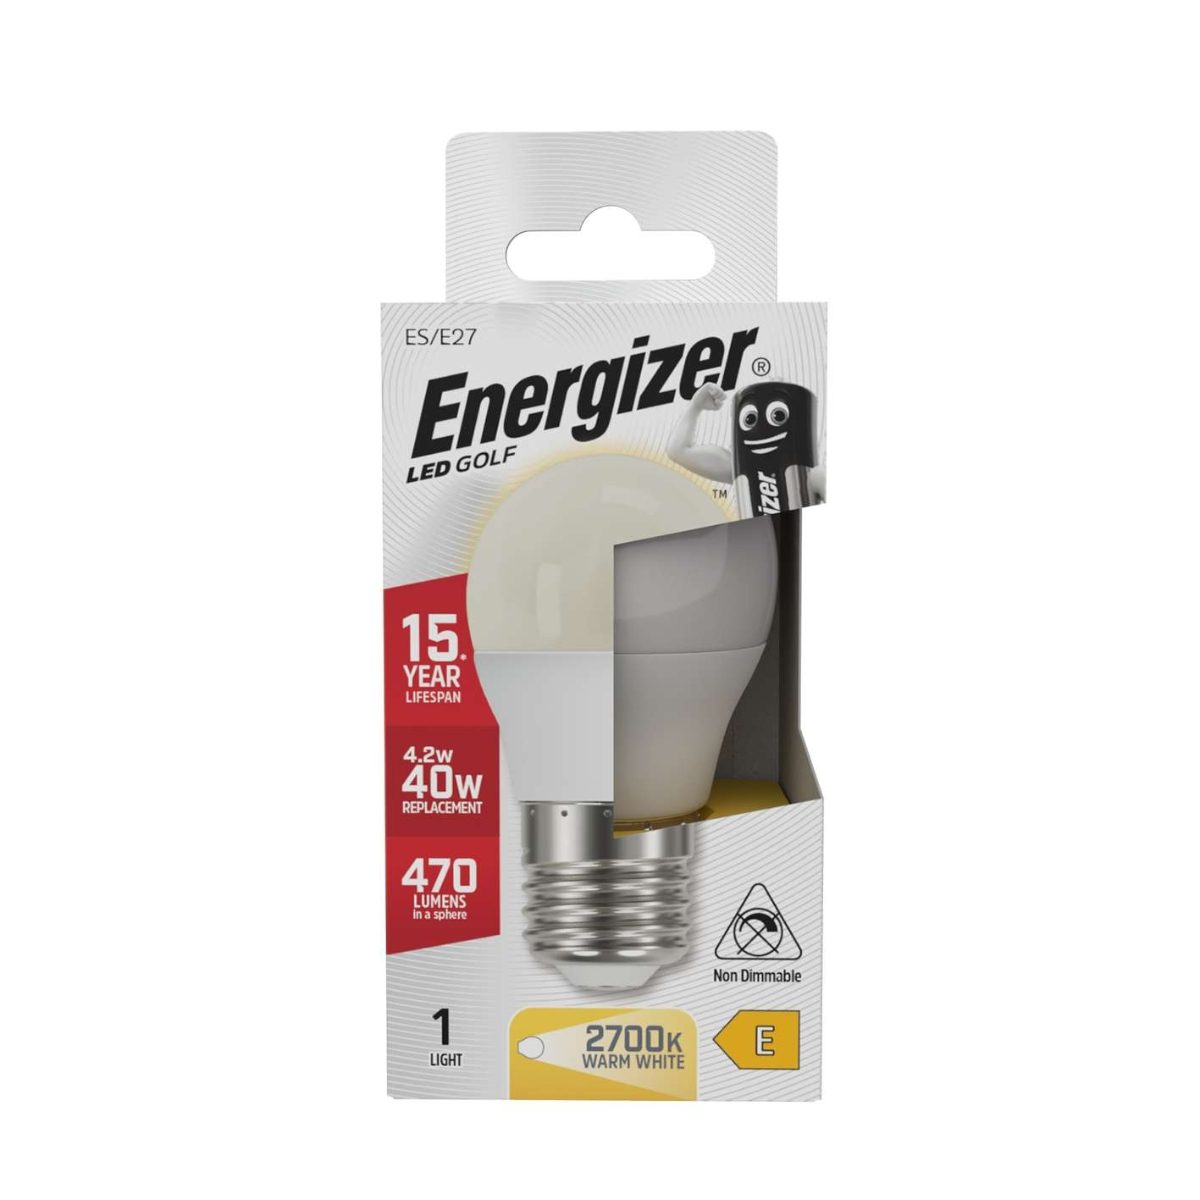 Energizer LED Golf E27 (ES) 470 Lumen 4,9 W 2.700 K (Warmweiß), Packung mit 1 Stück